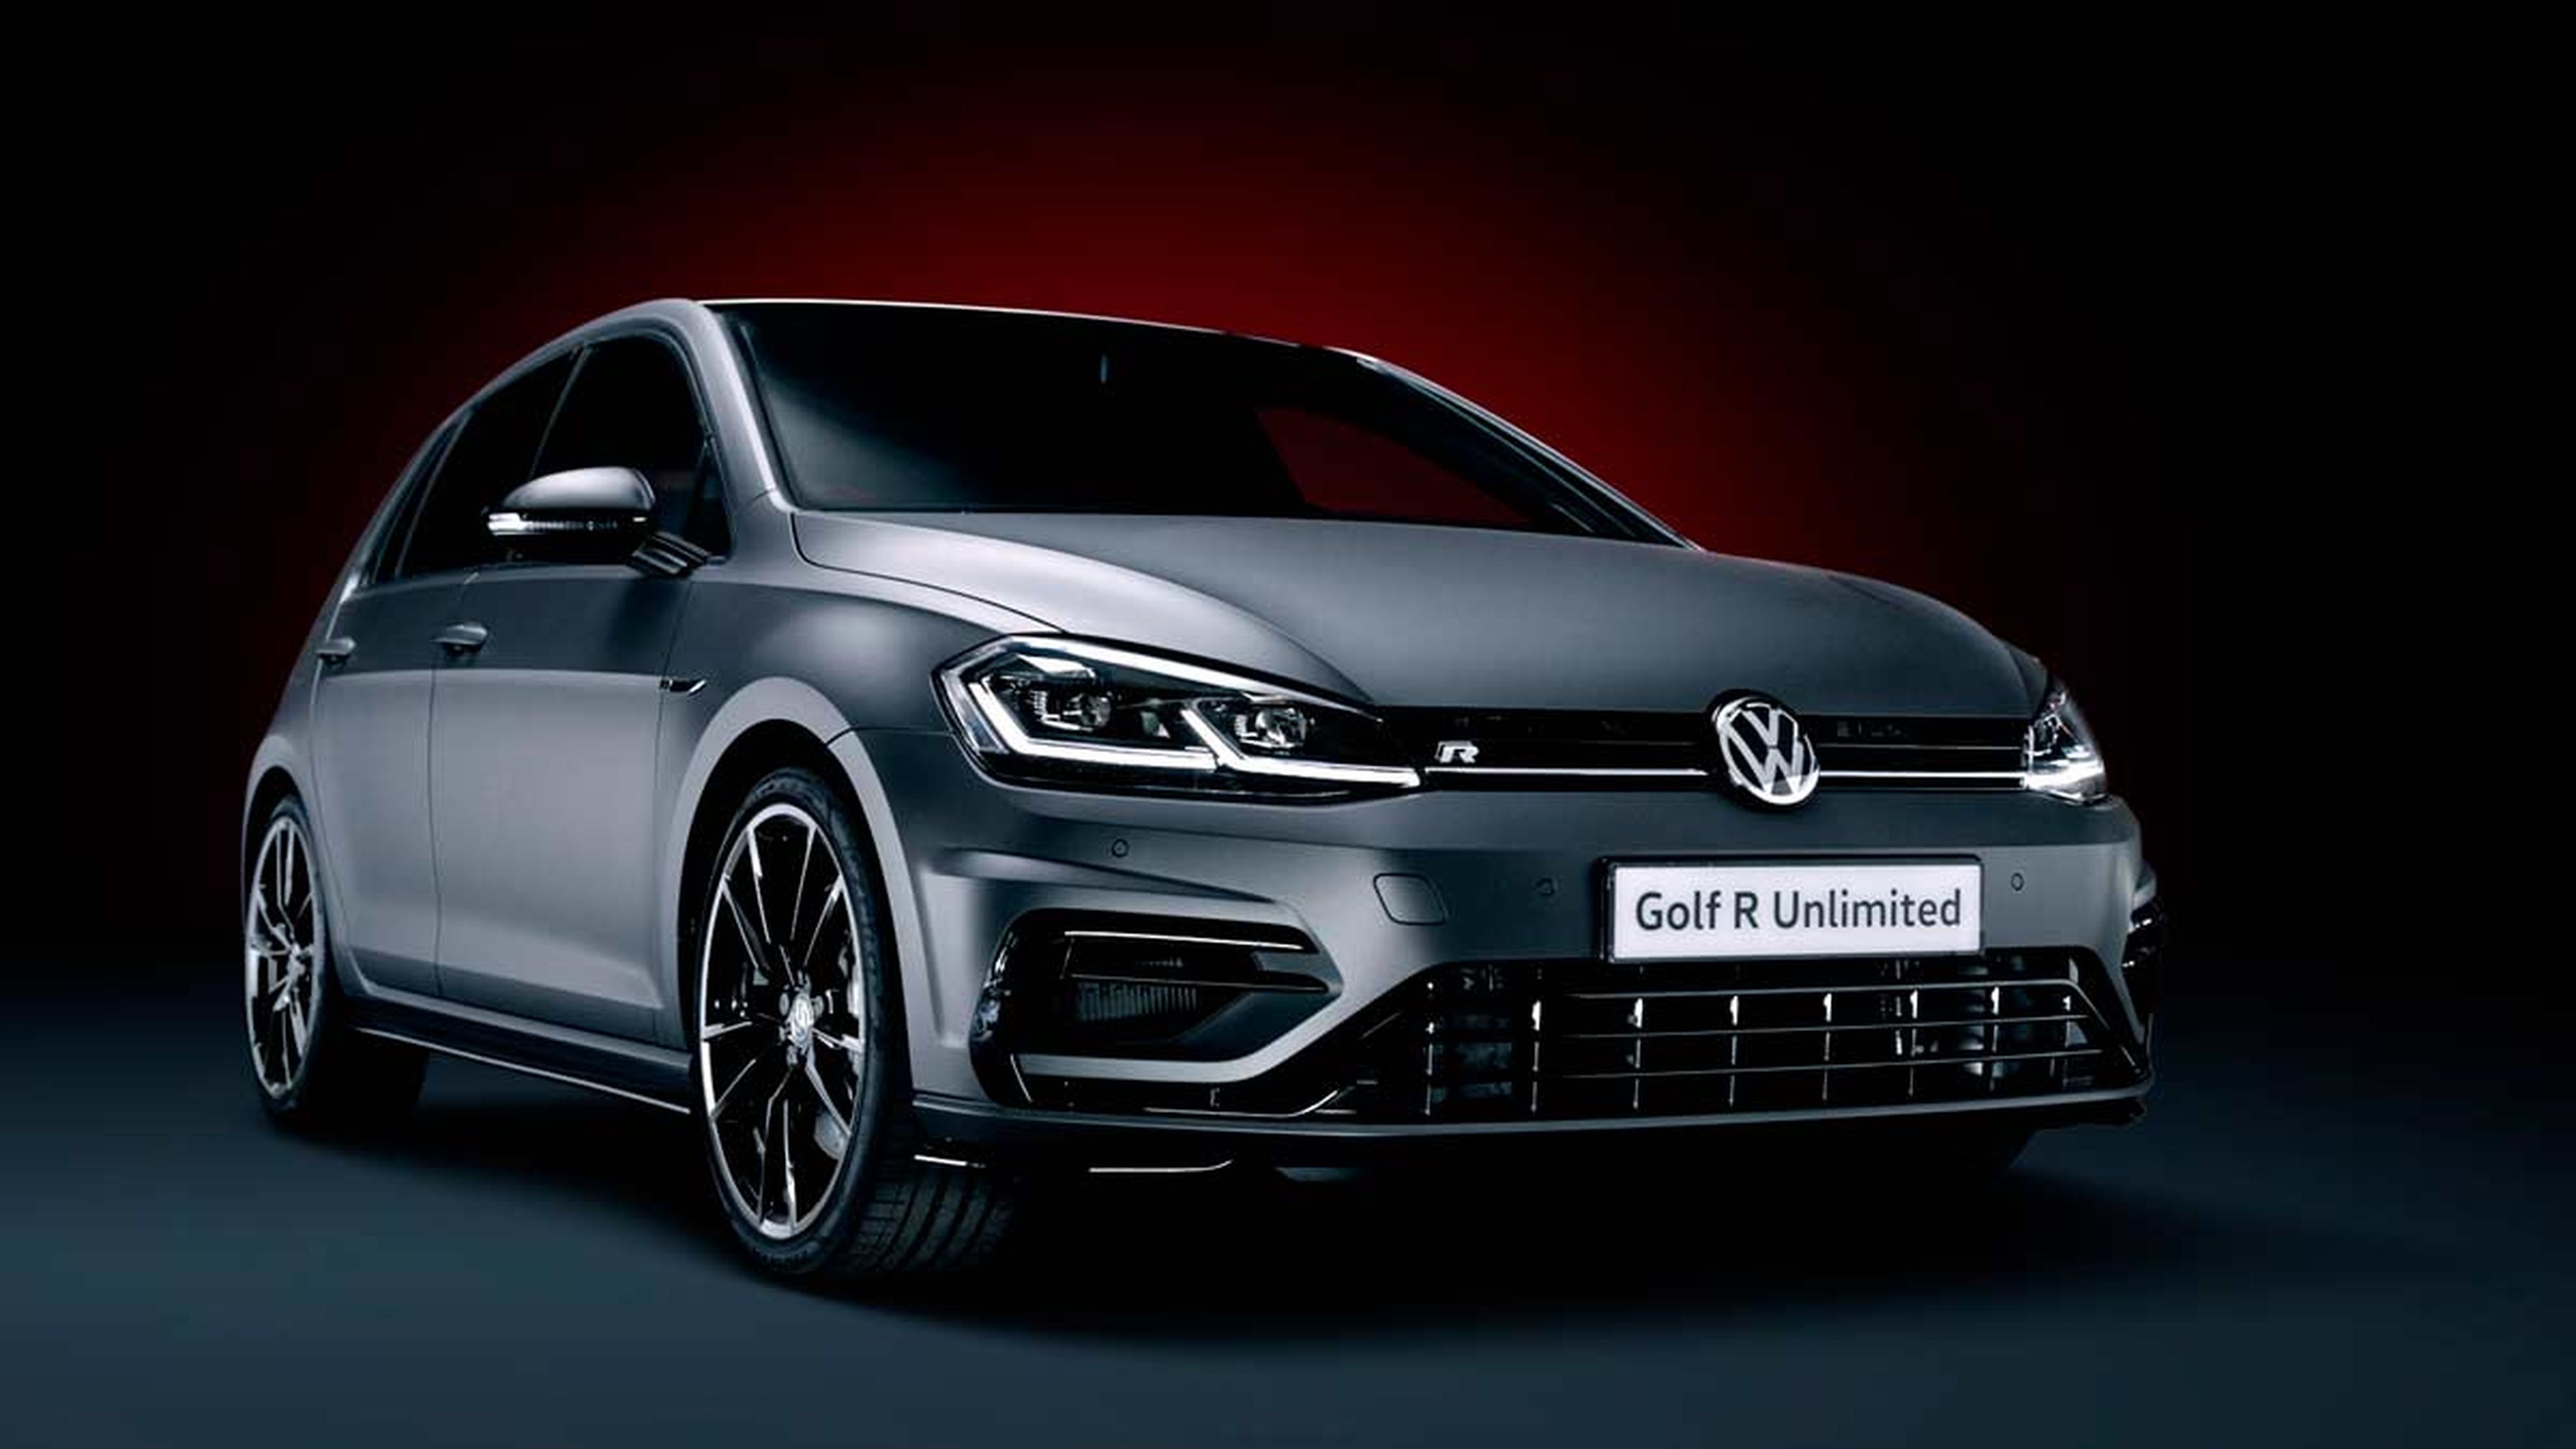 Volkswagen Golf R Unlimited Edition